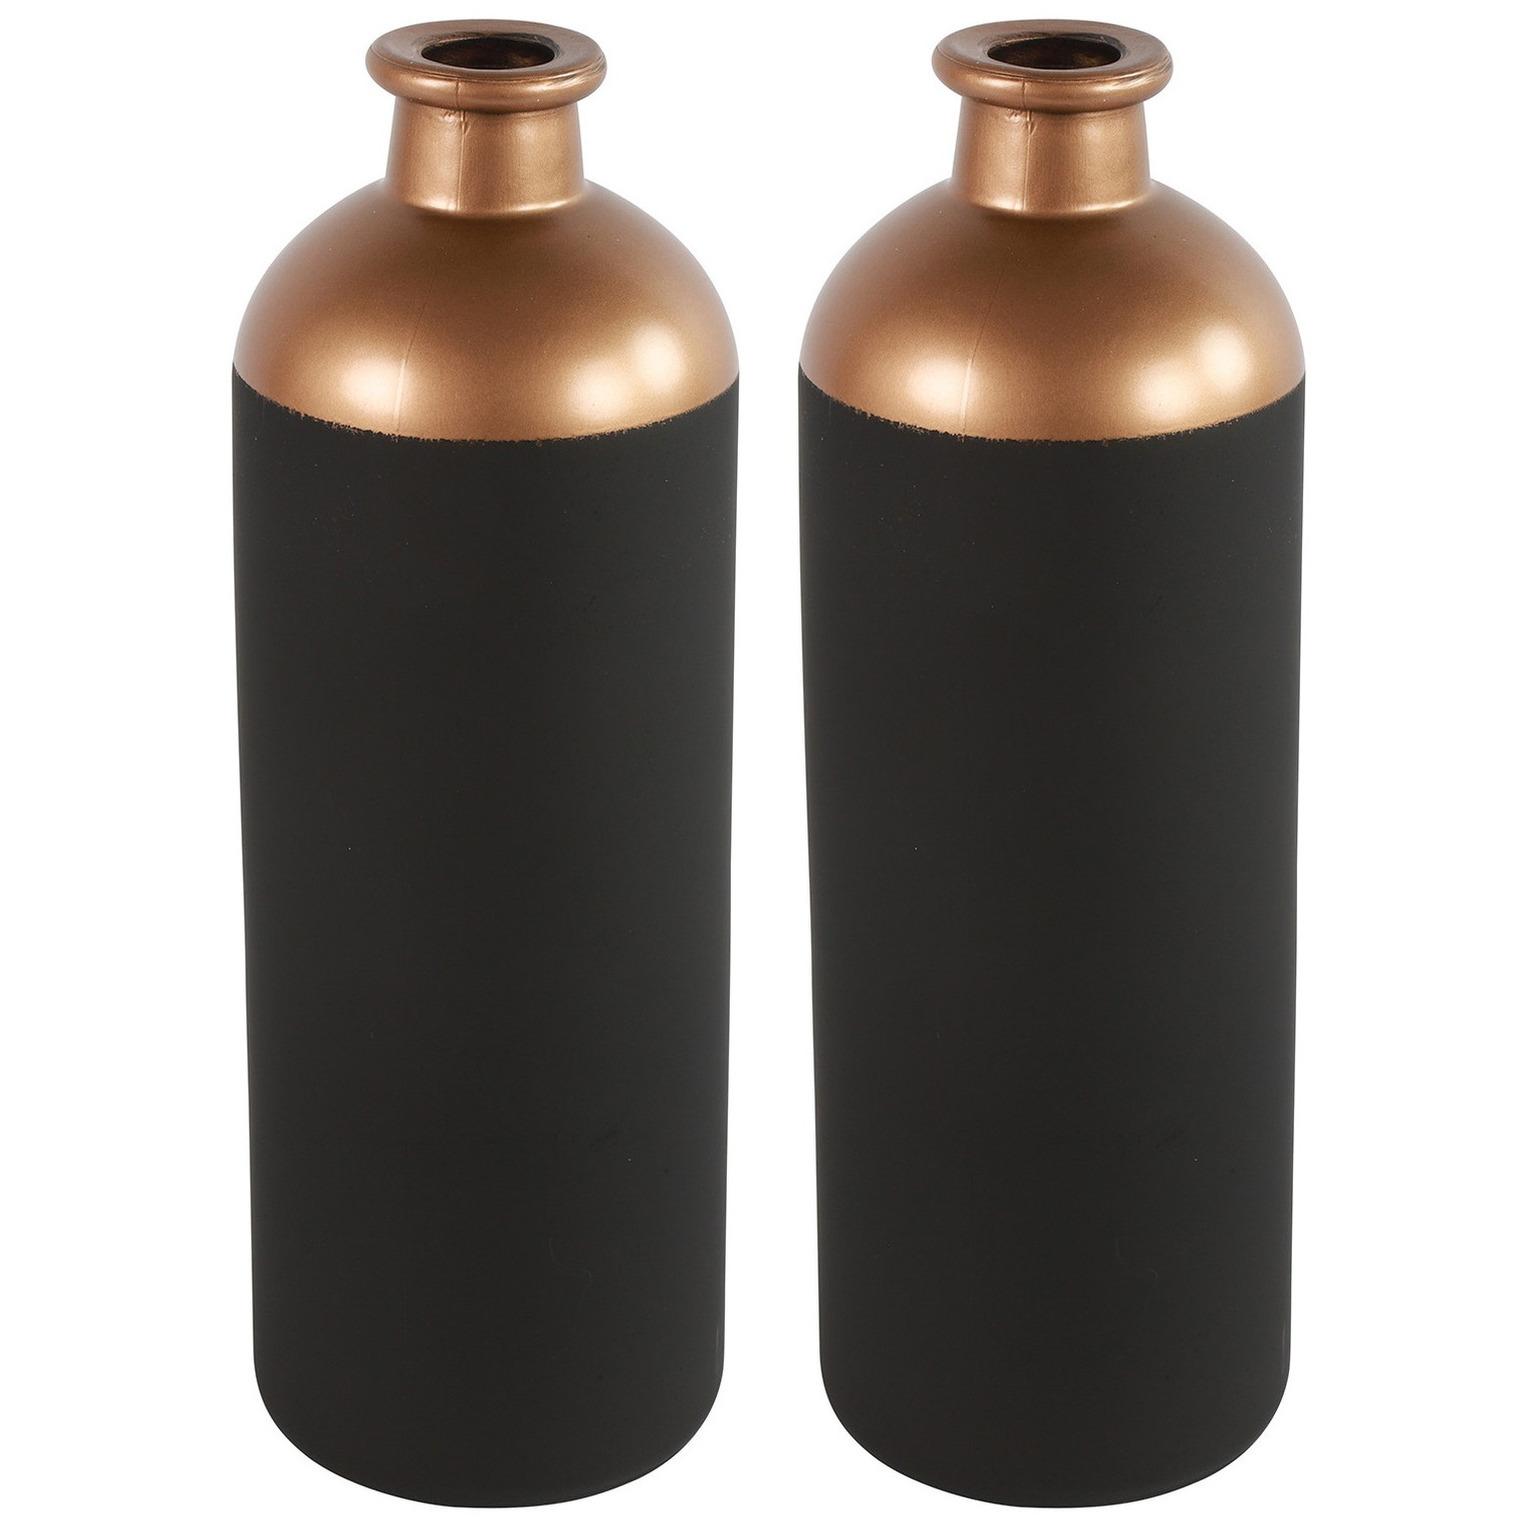 Countryfield Bloemen-deco vaas 2x zwart-koper glas luxe fles vorm D11 x H33 cm